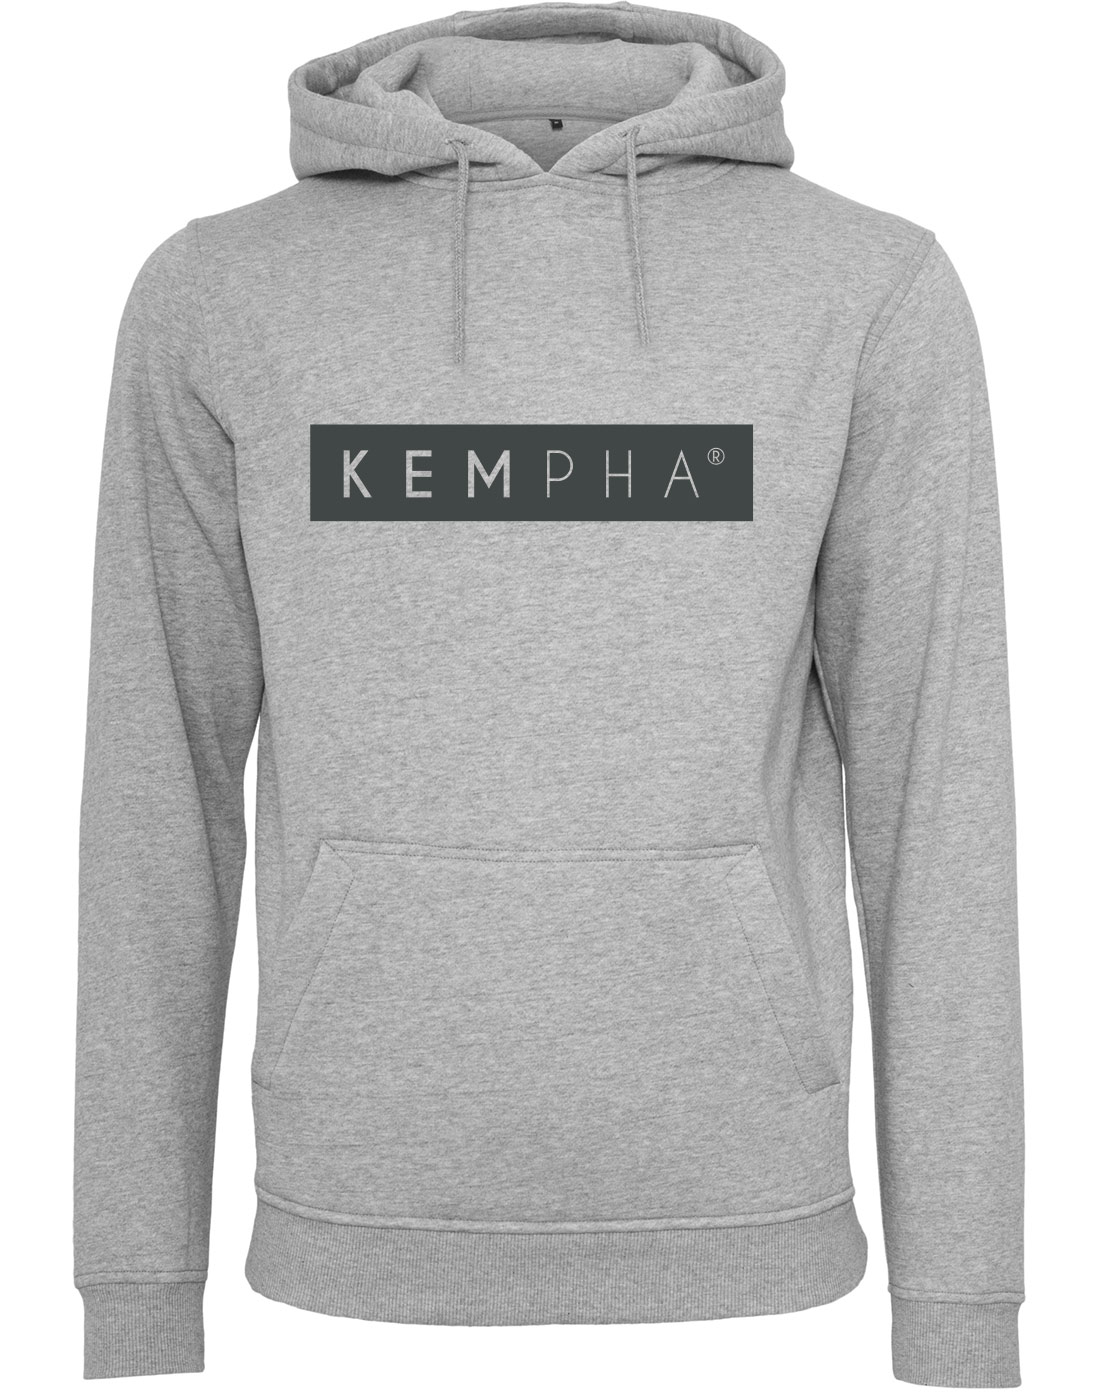 Kempha Premium Hoodie anthrazit auf heathergrey